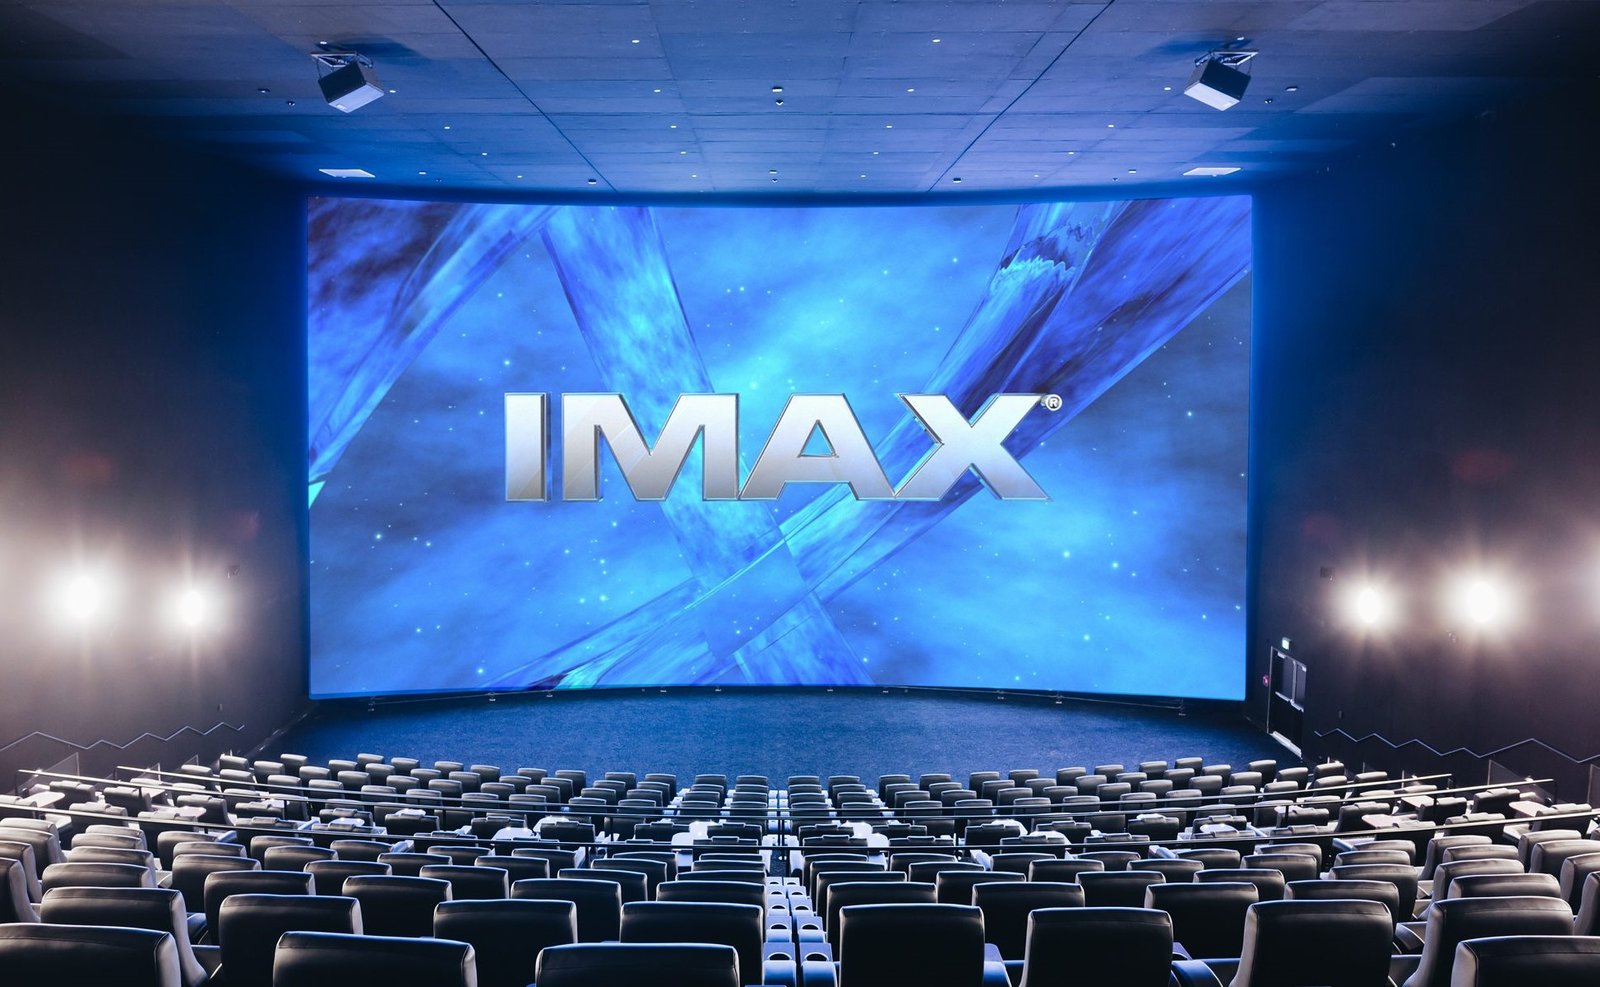 IMAX Marketing Mix